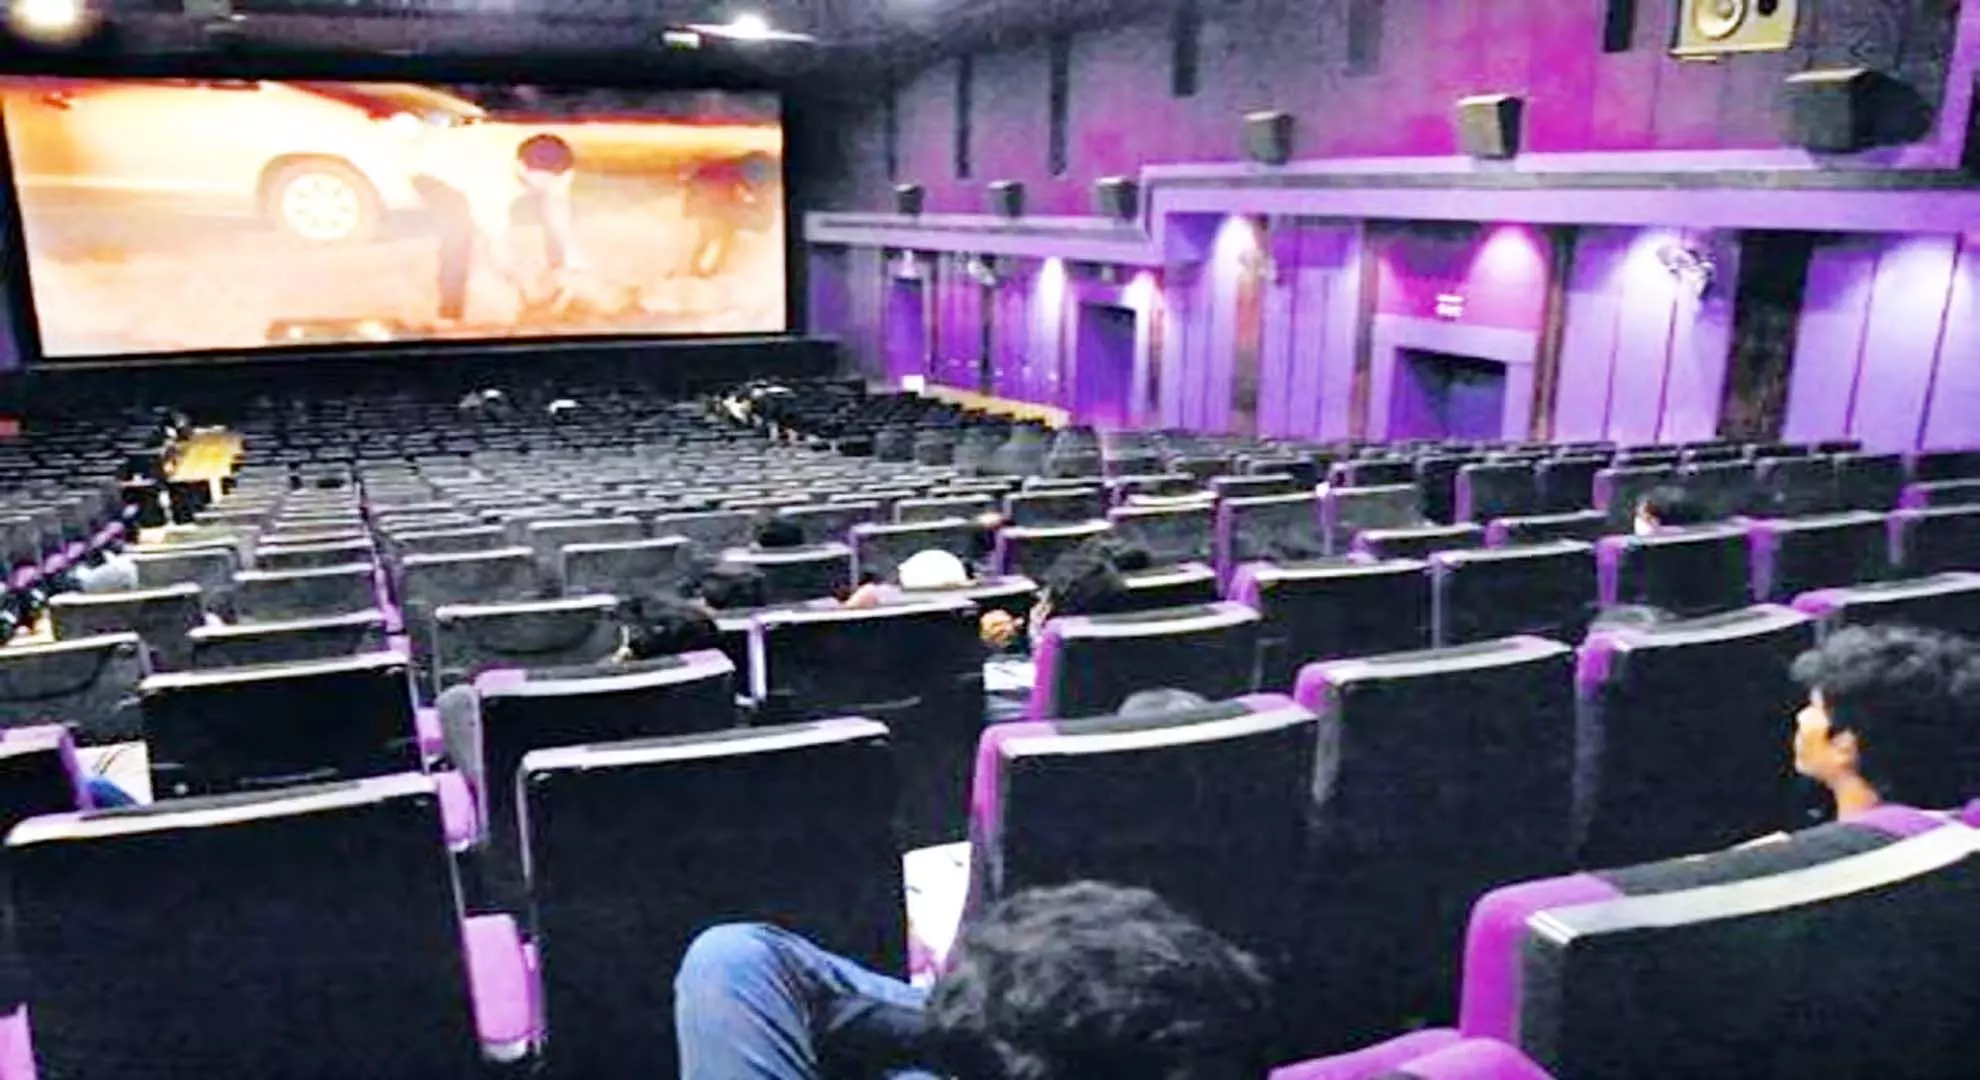 FEUOK: 22 फरवरी के बाद रिलीज होने वाली मलयालम फिल्में नहीं दिखाई जाएंगी